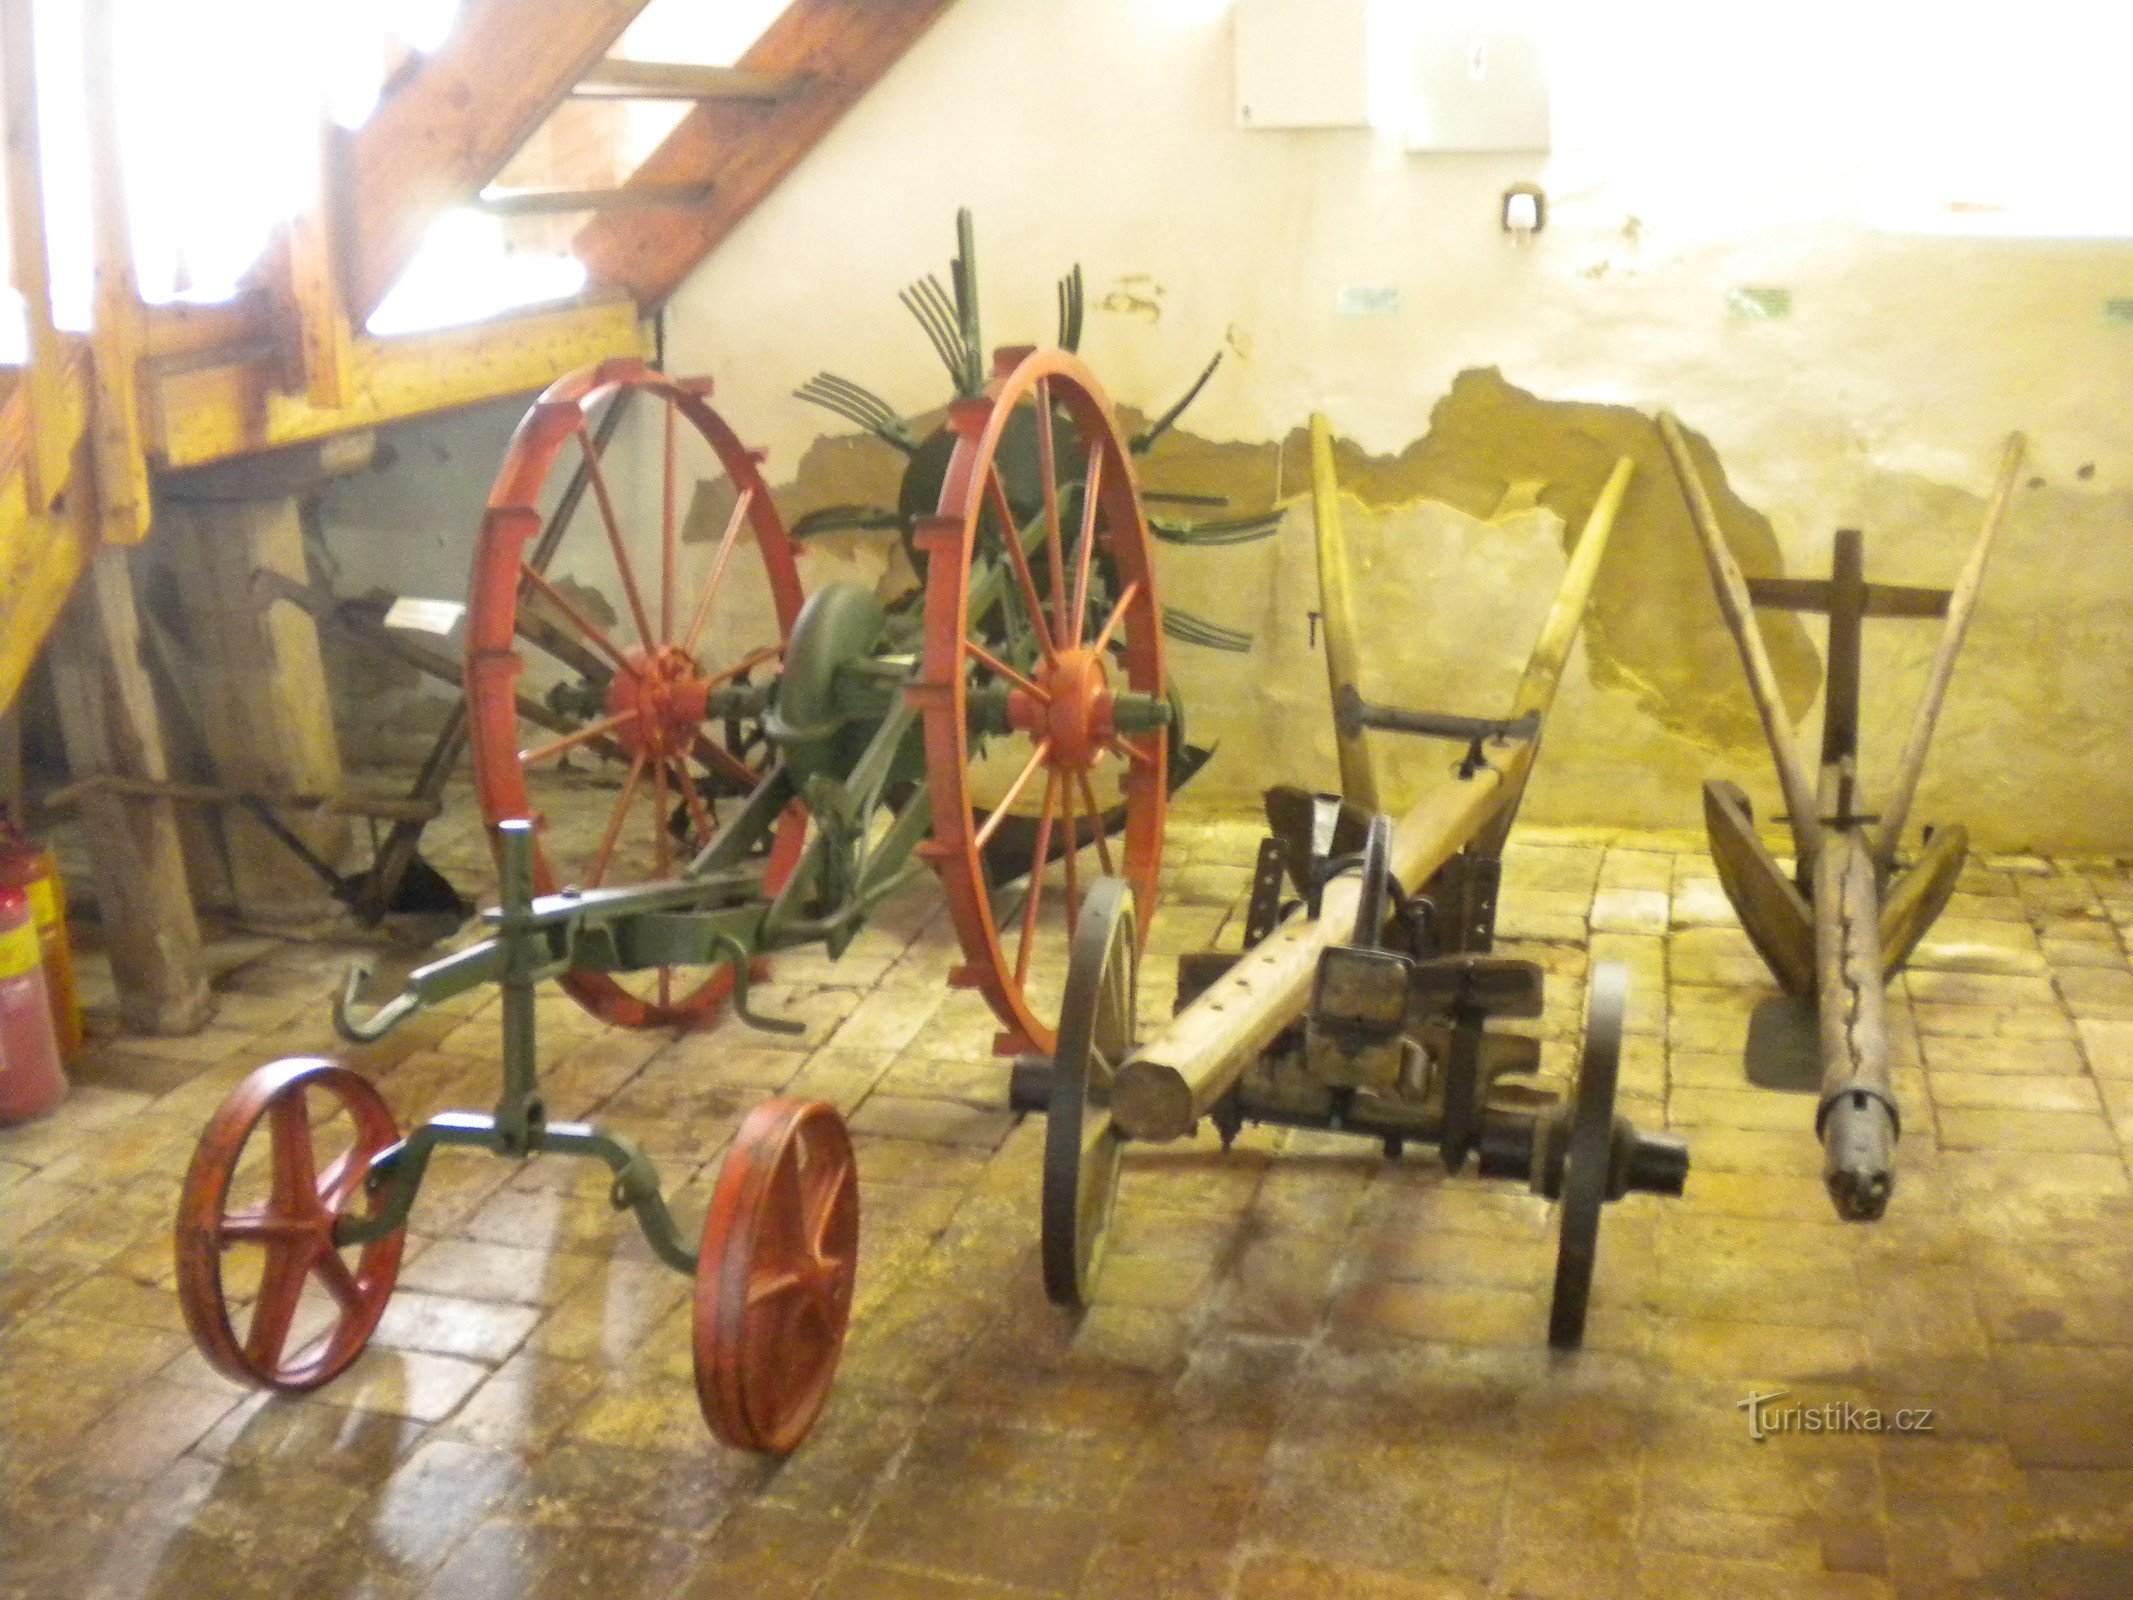 Museo del villaggio ceco in Perù